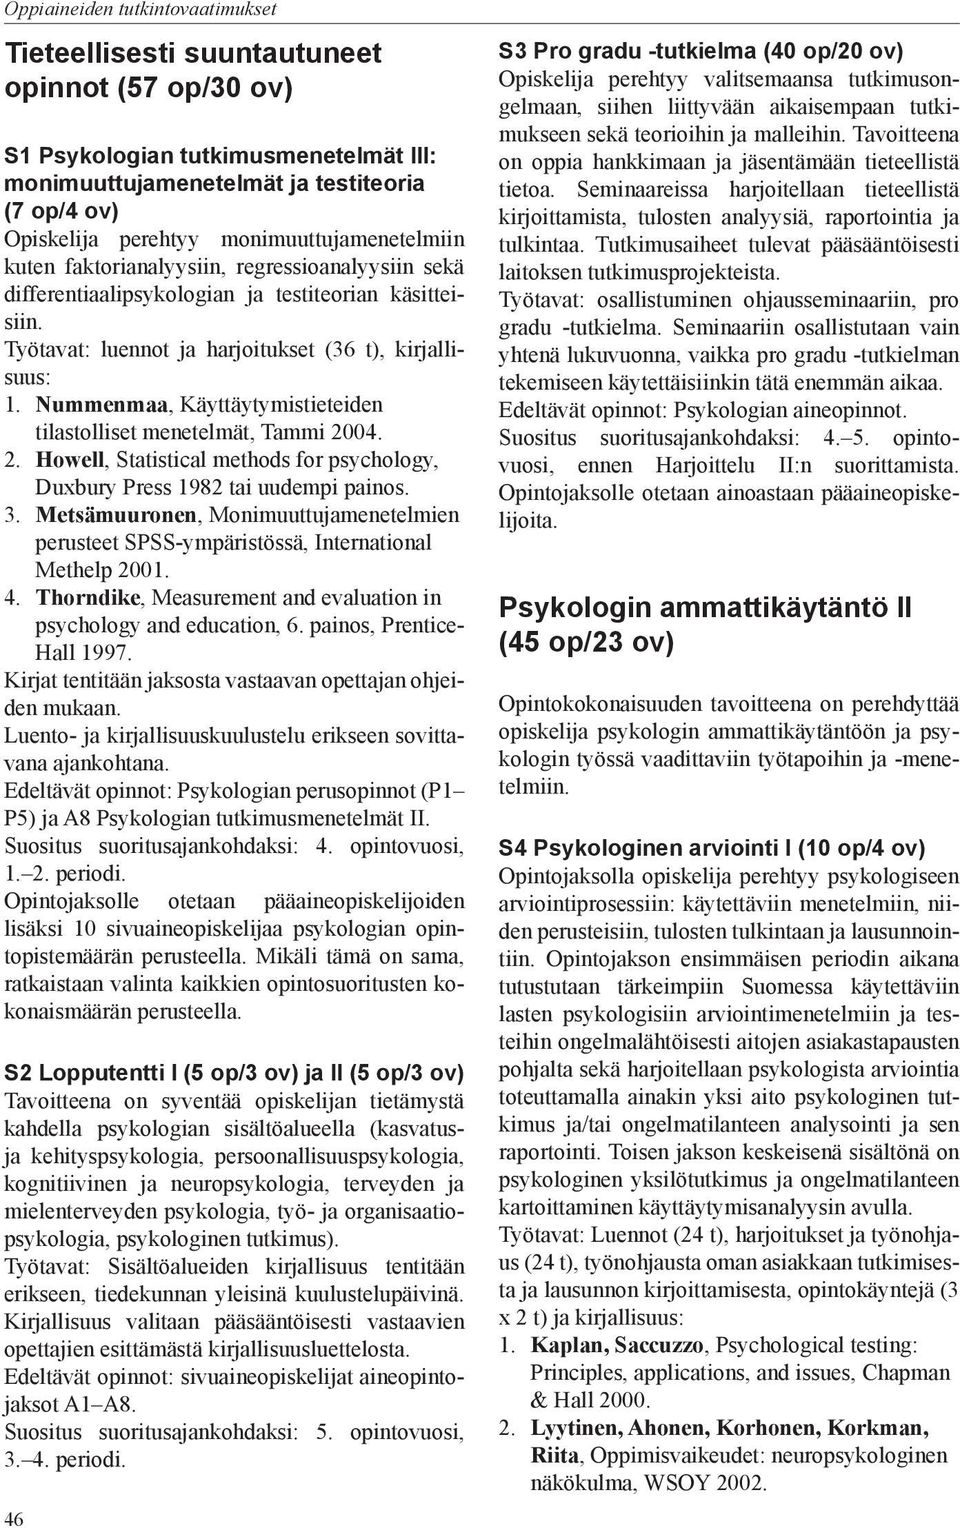 Nummenmaa, Käyttäytymistieteiden tilastolliset menetelmät, Tammi 2004. 2. Howell, Statistical methods for psychology, Duxbury Press 1982 tai uudempi painos. 3.